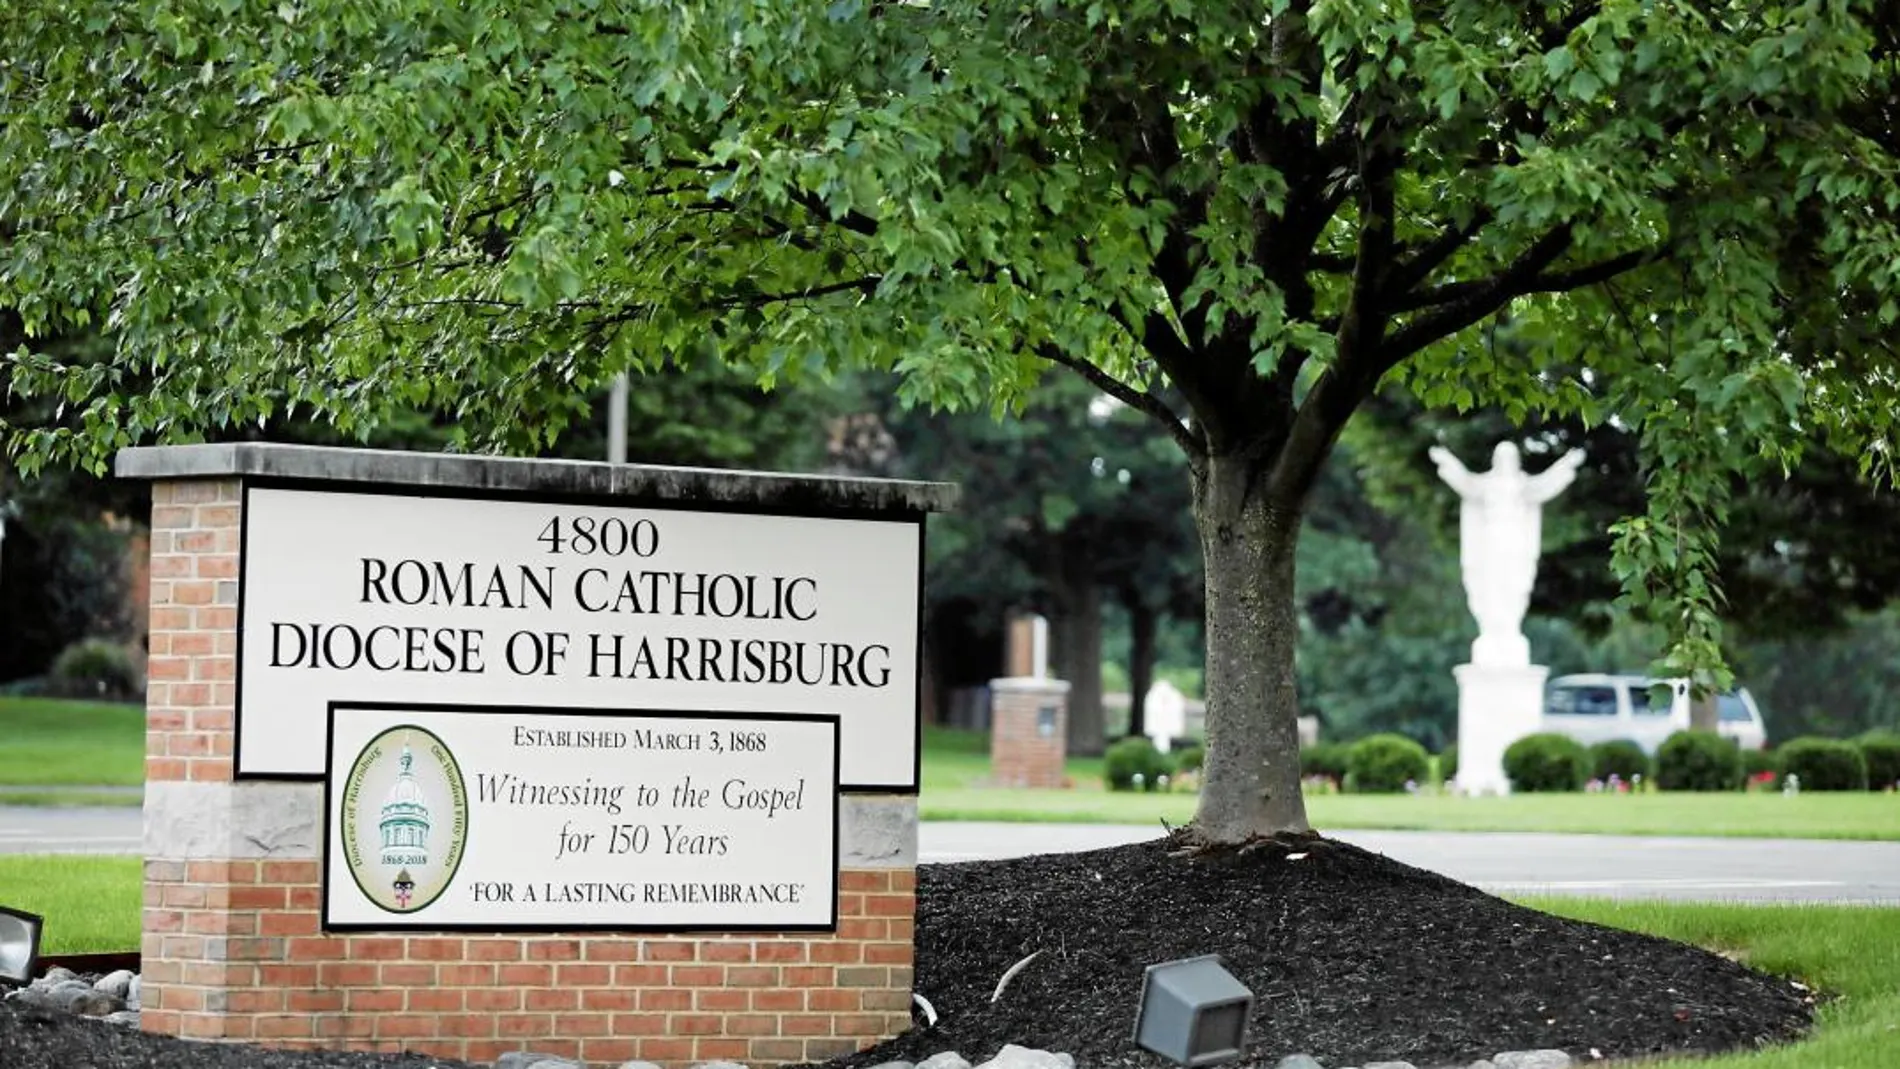 La diócesis de Harrisburg de Pensilvania, una de las que más casos padeció según el informe del gran jurado.